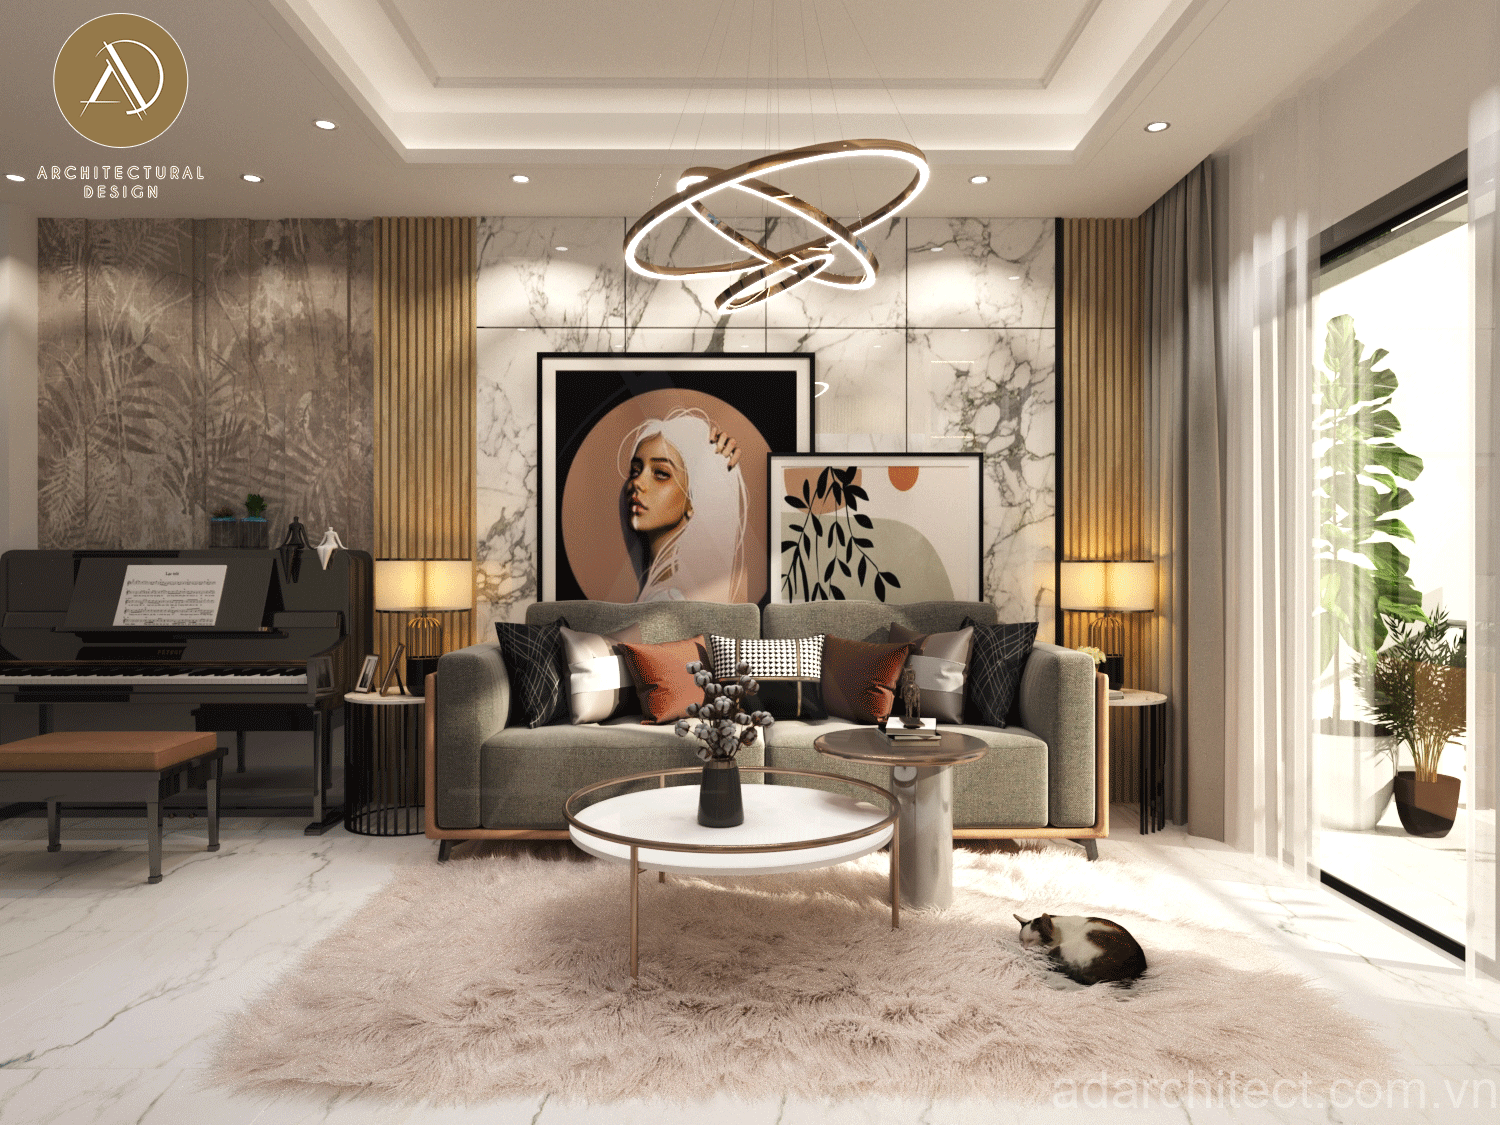 thiết kế căn hộ 90m2 có mẫu phòng khách đẹp với tông màu hiện đại, trang nhã